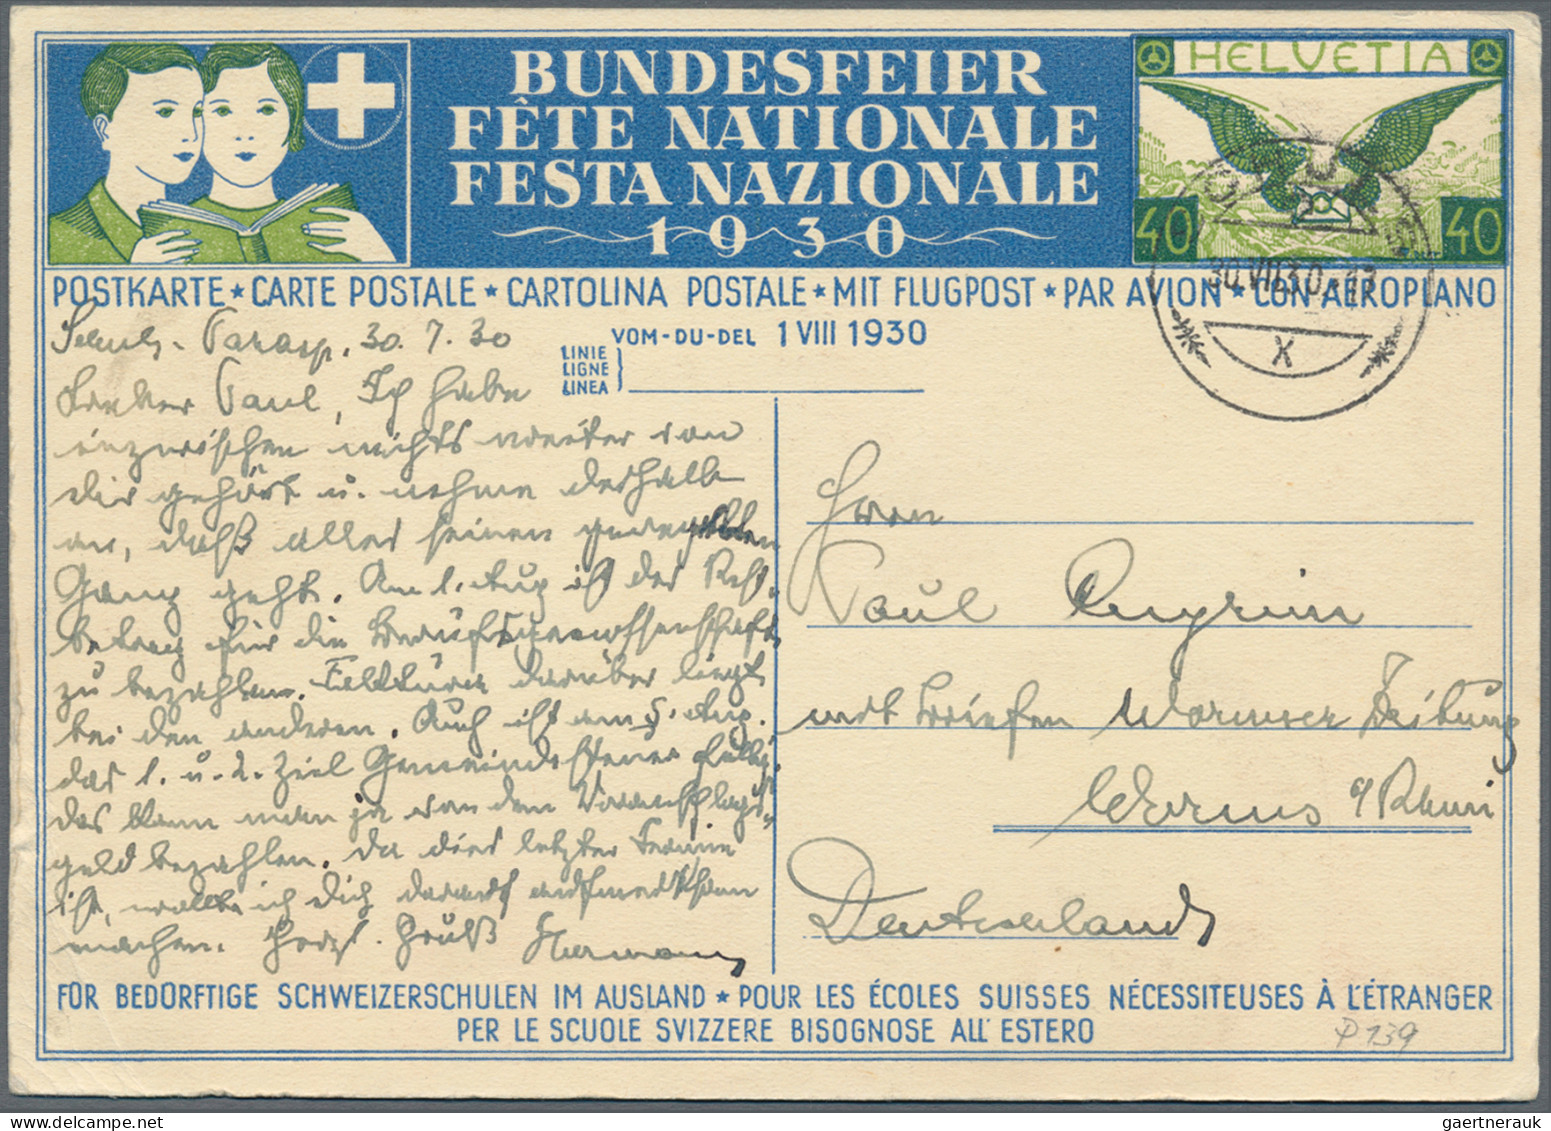 Schweiz - Ganzsachen: 1910-1937 Etwa 90 Bundesfeierkarten im Album, dabei "Turne